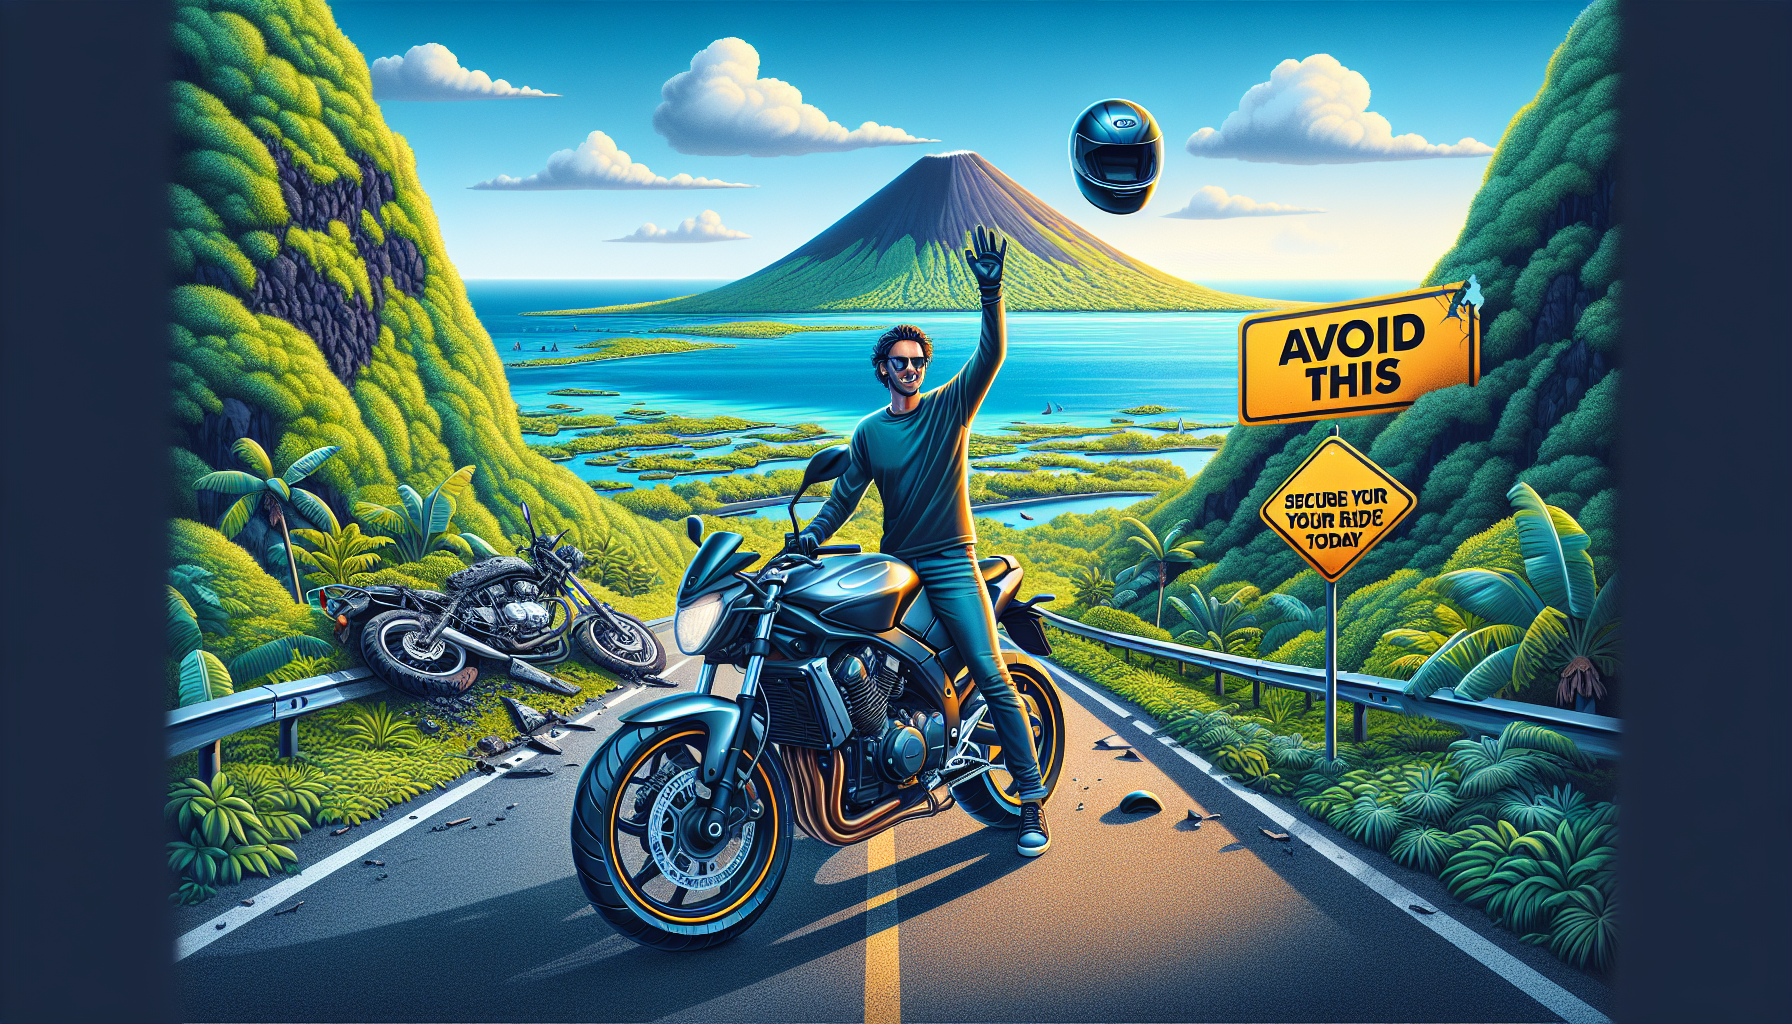 découvrez pourquoi souscrire une assurance moto à la réunion 974. obtenez une protection adaptée pour votre moto grâce à une assurance moto complète.